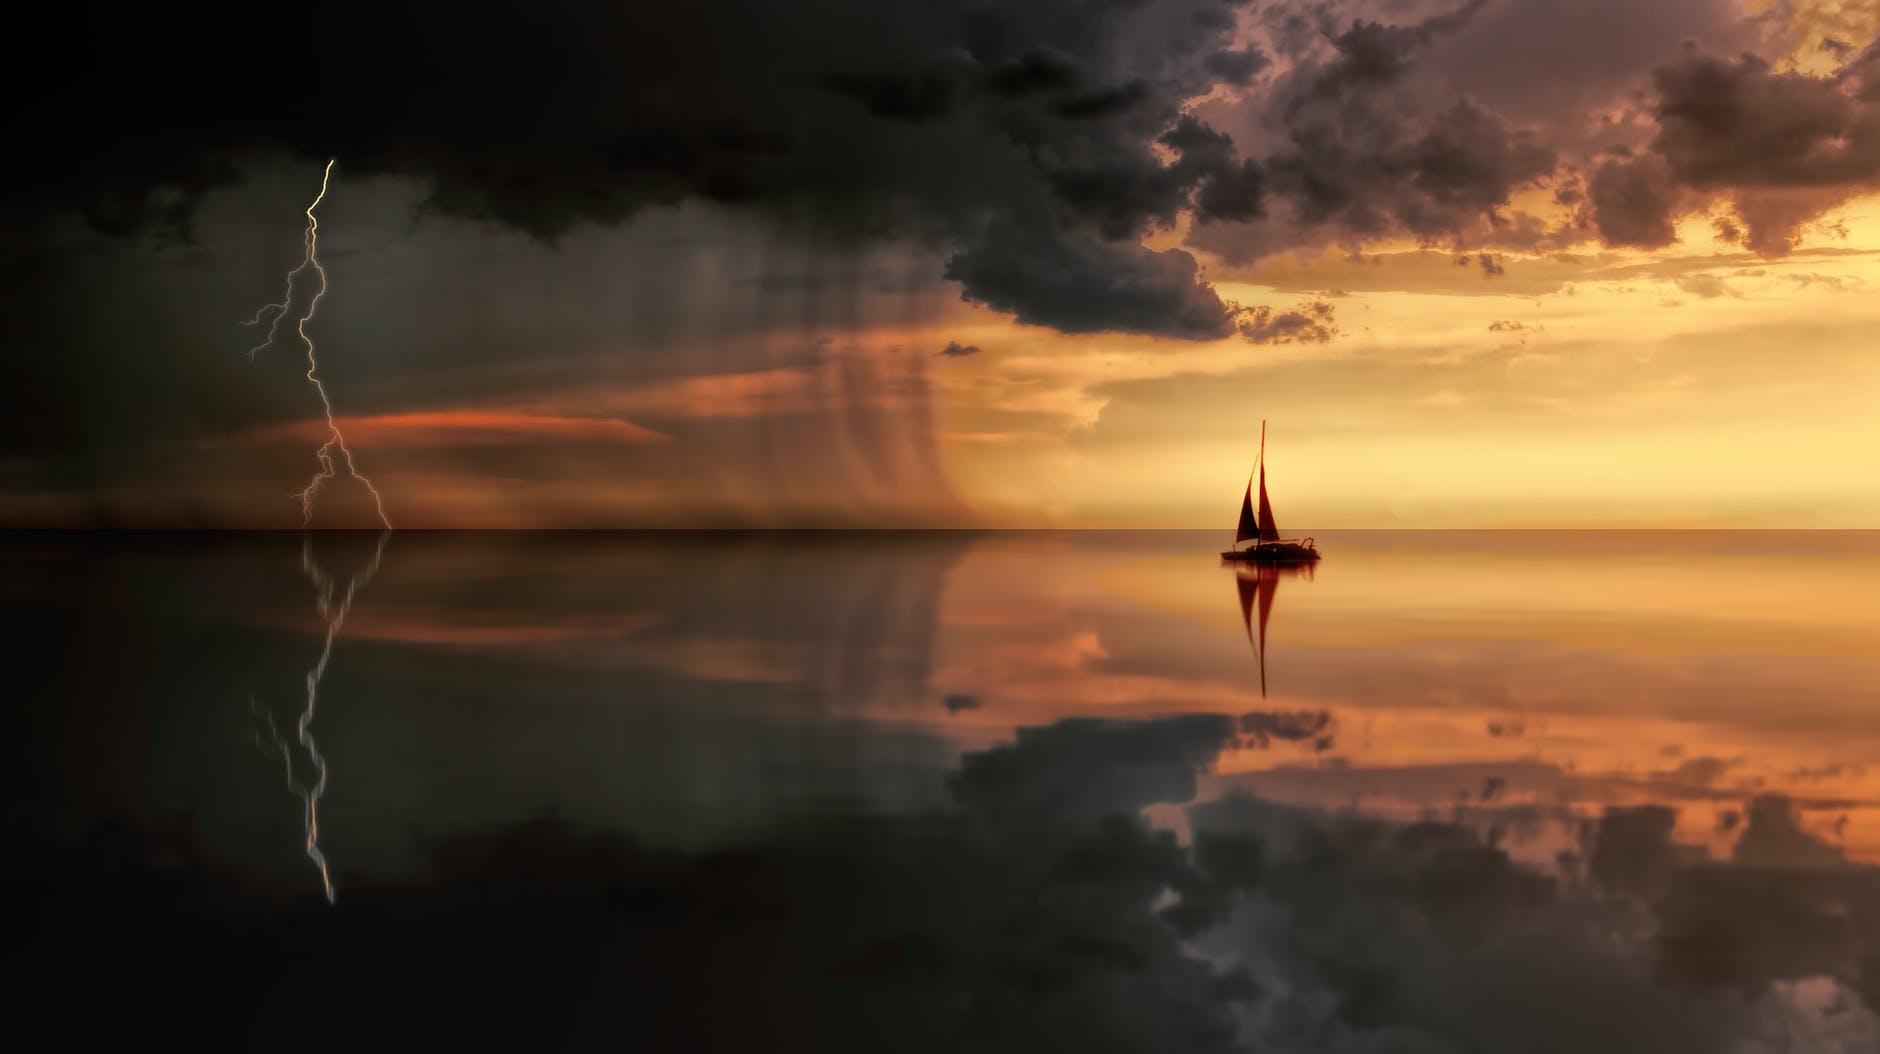 Živimo li svoj ili tuđi život?

silhouette photography of boat on water during sunset